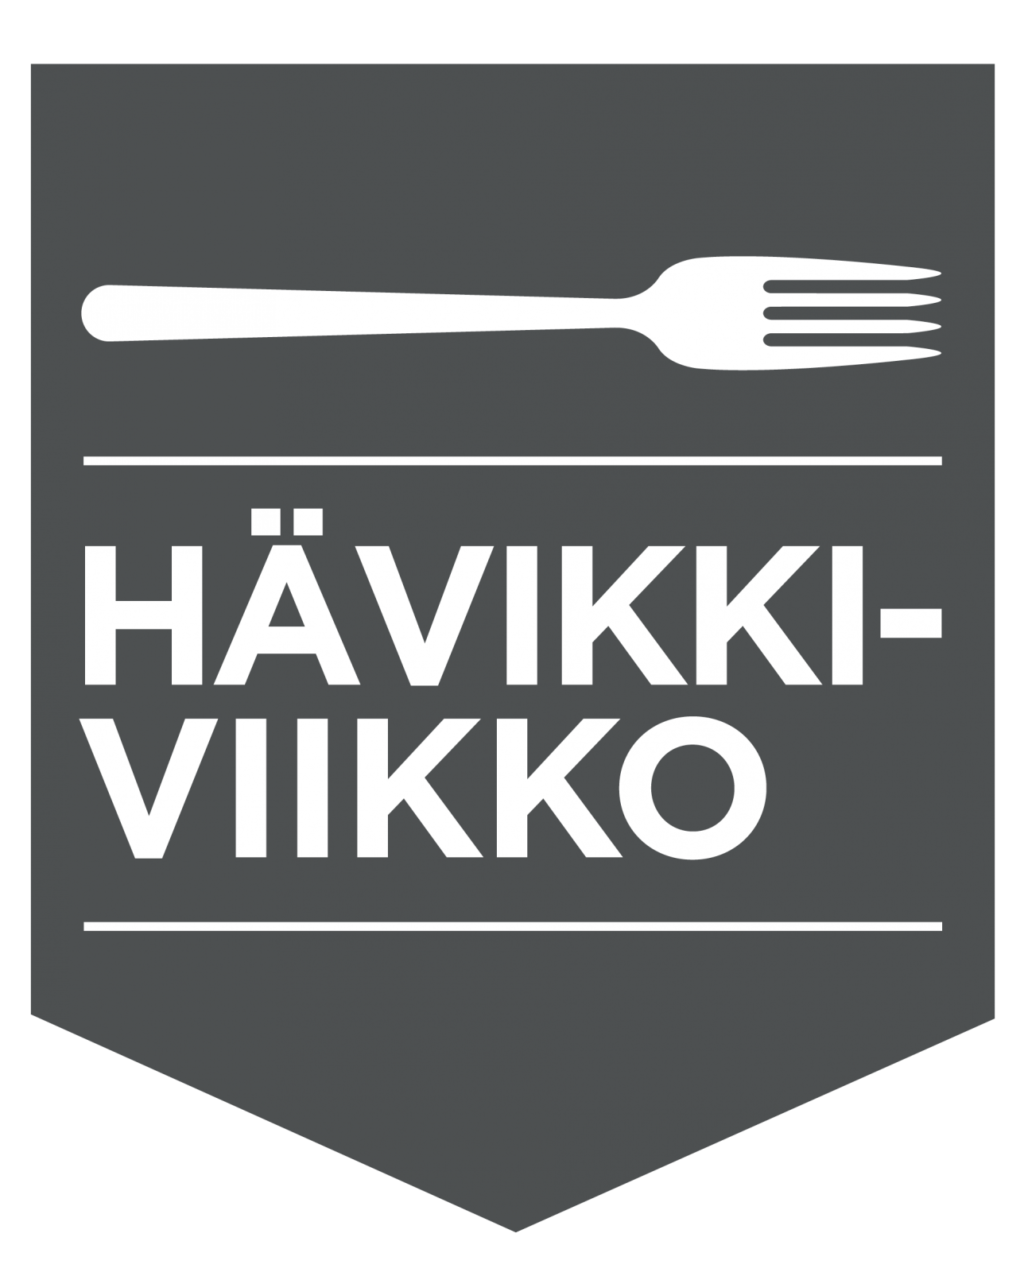 Hävikkiviikon logo